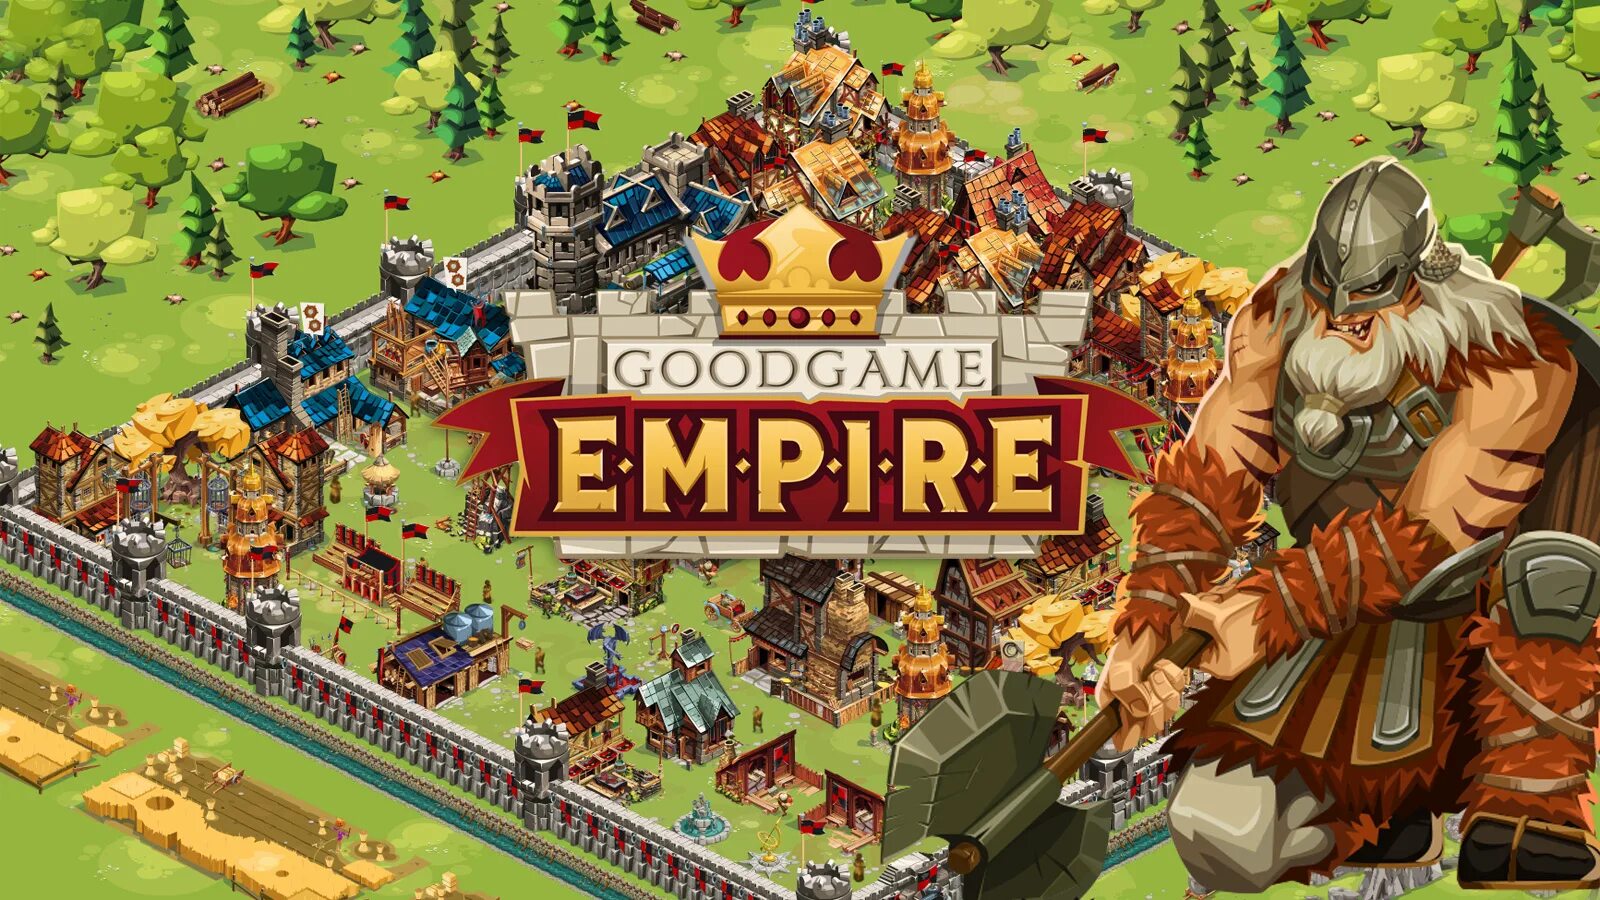 Эмпайр игра. Игра goodgame Empire. Гудгейм Эмпайр. Goodgame Empire PC game.